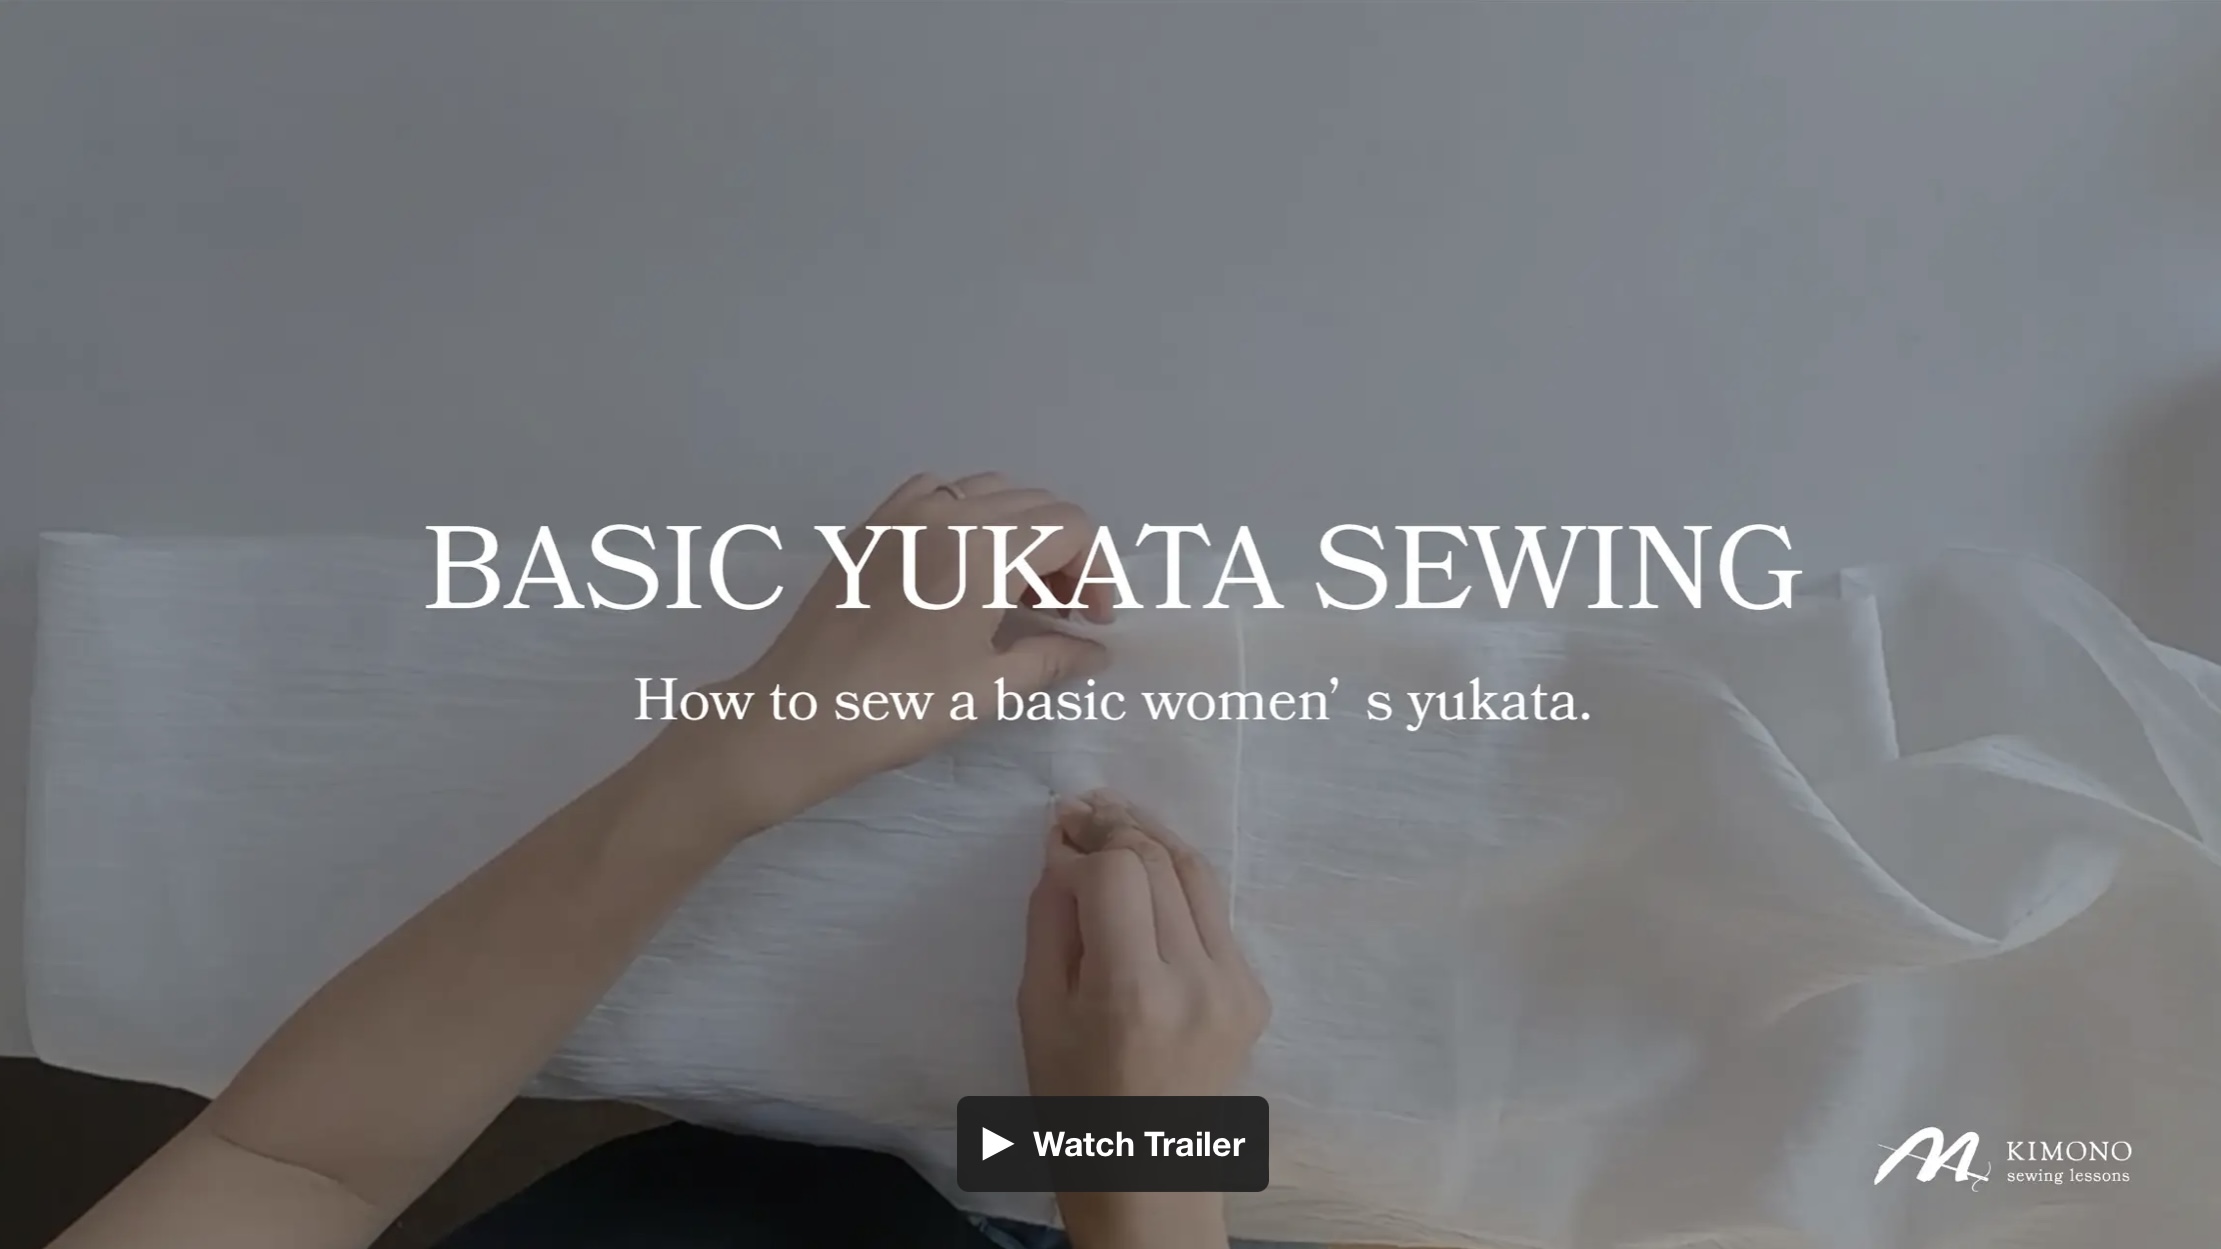 Kimono sewing 
Yukata sewing
Wasai